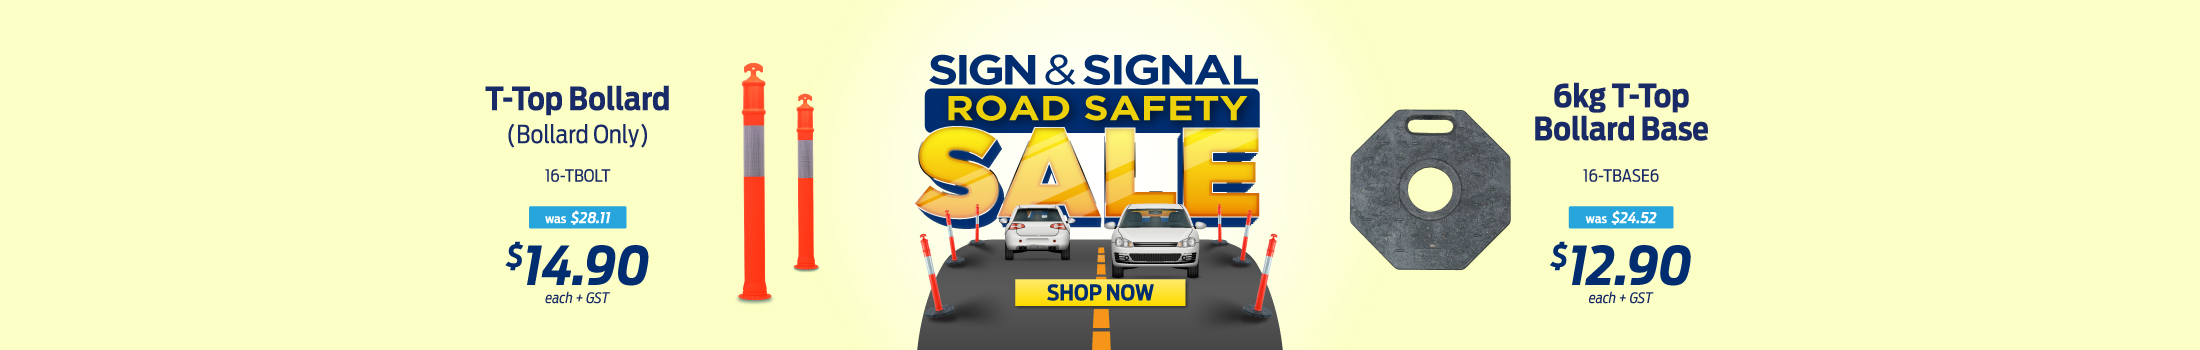 Sign & Signal Road Safety Sale - Desktop Banner - AU